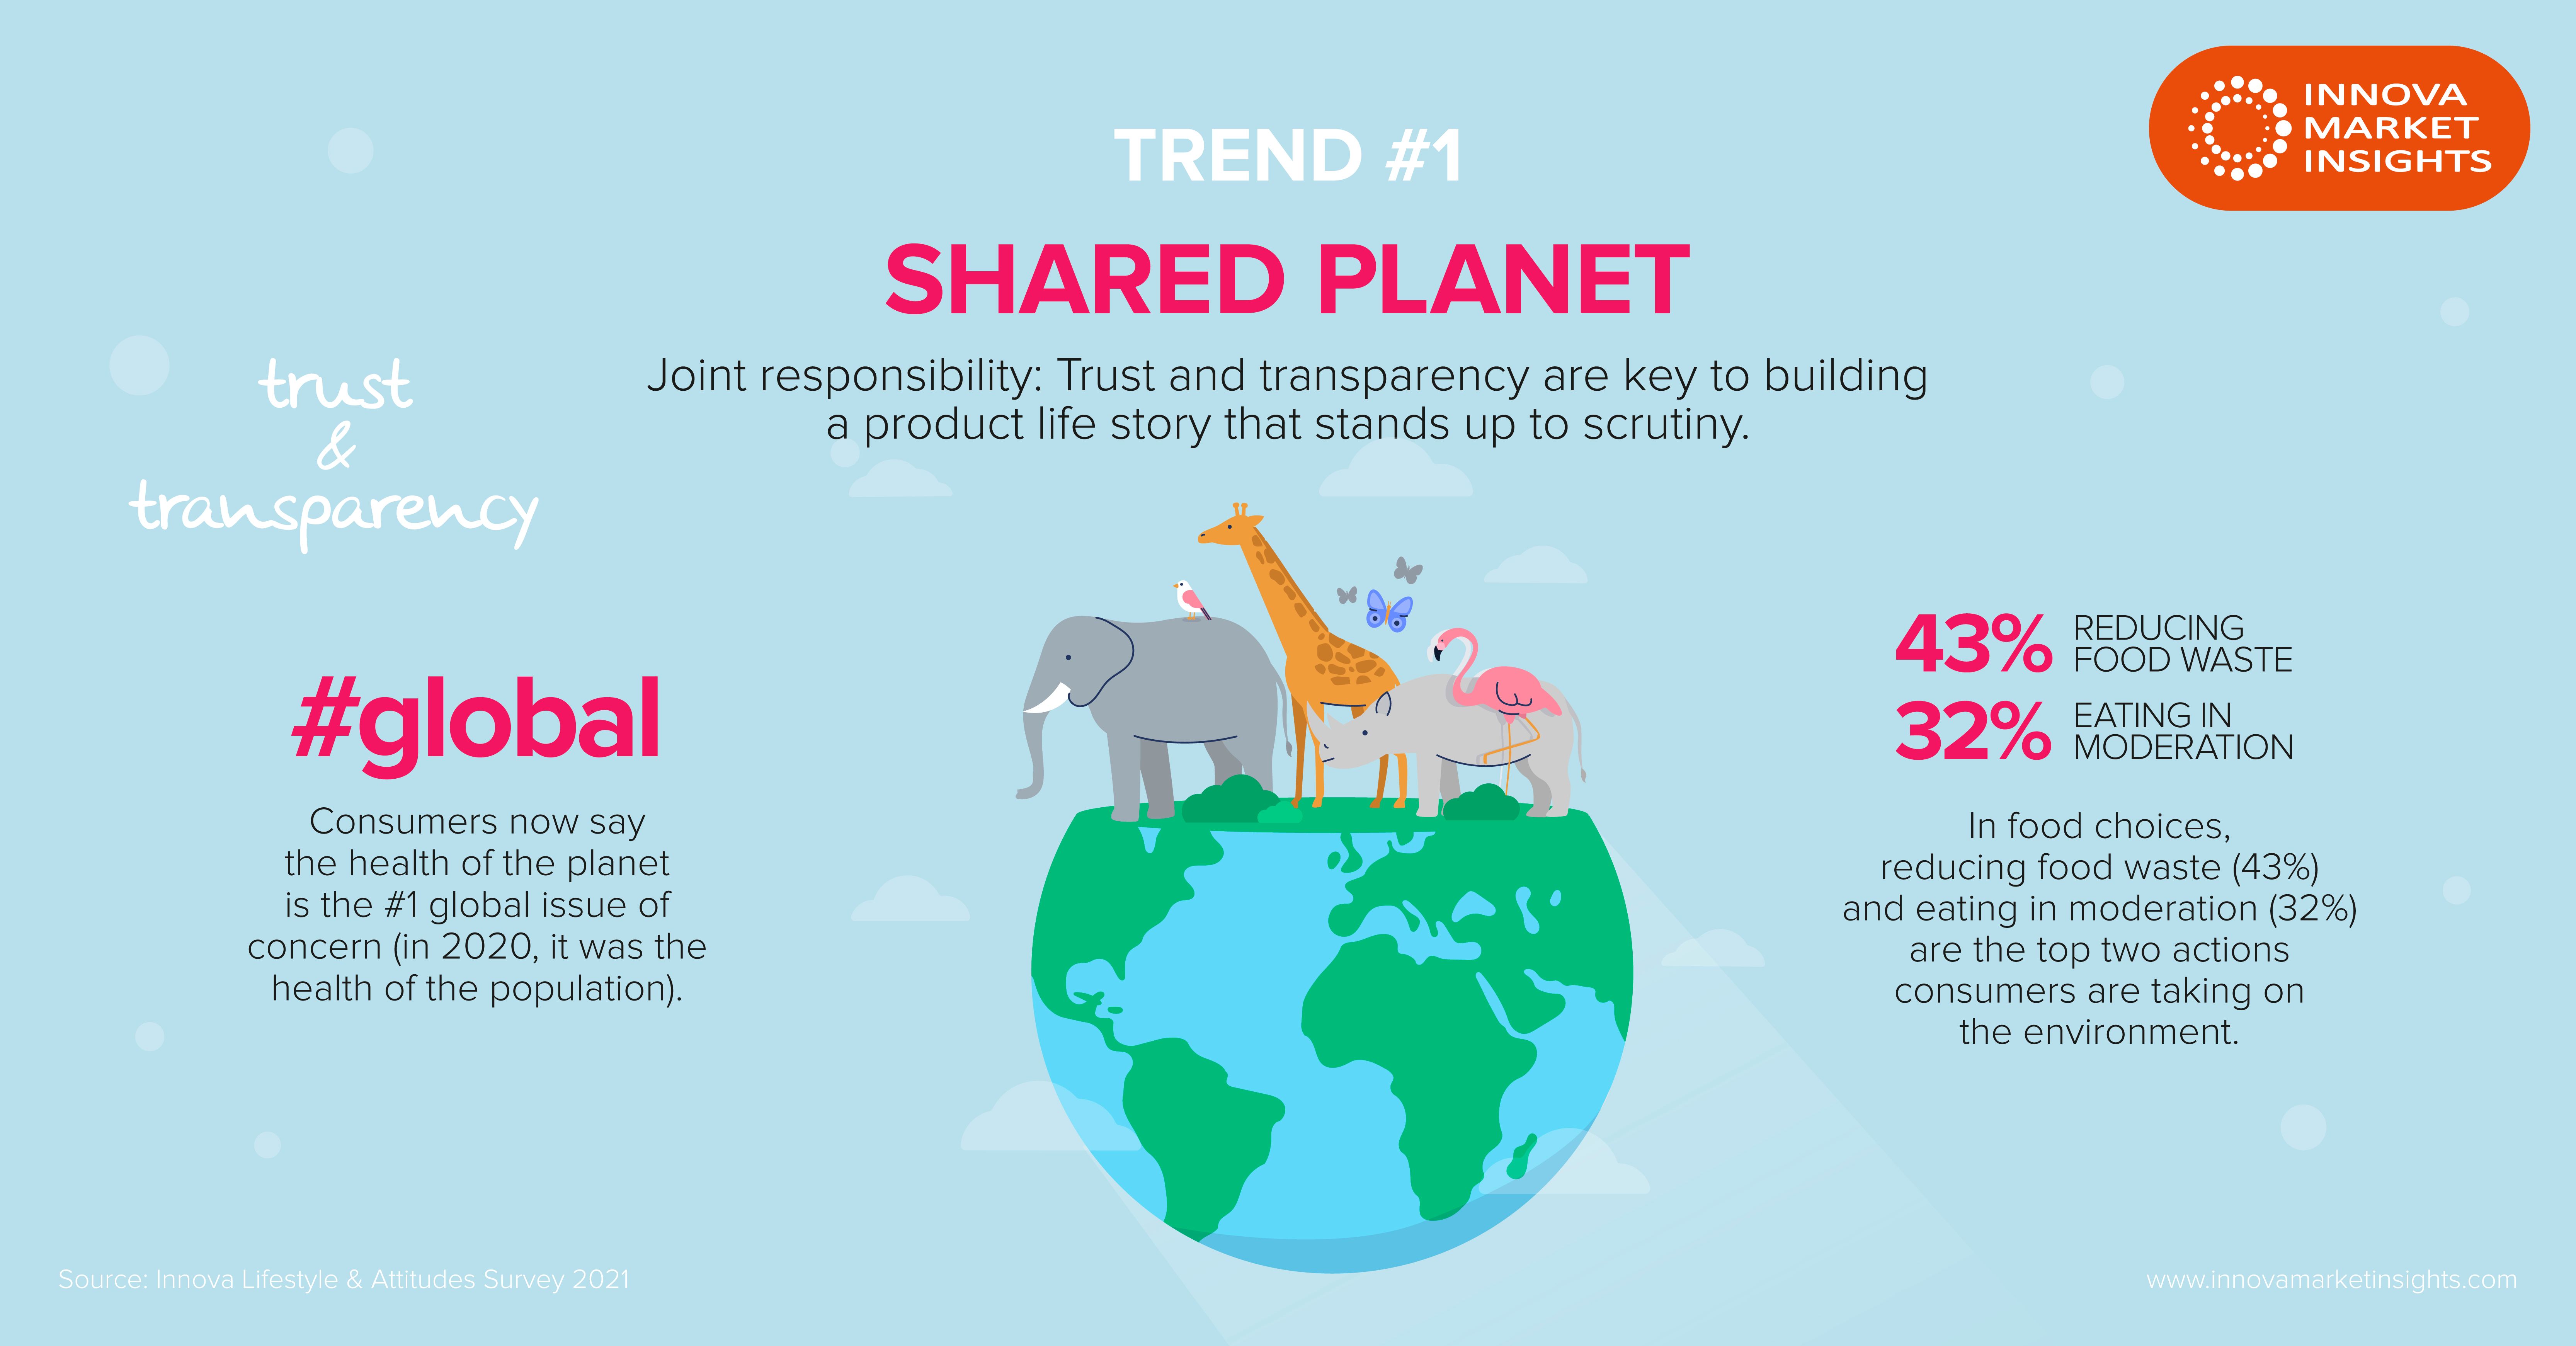 „Shared Planet“ führt die Top Trends von Innova Market Insights für 2022 an